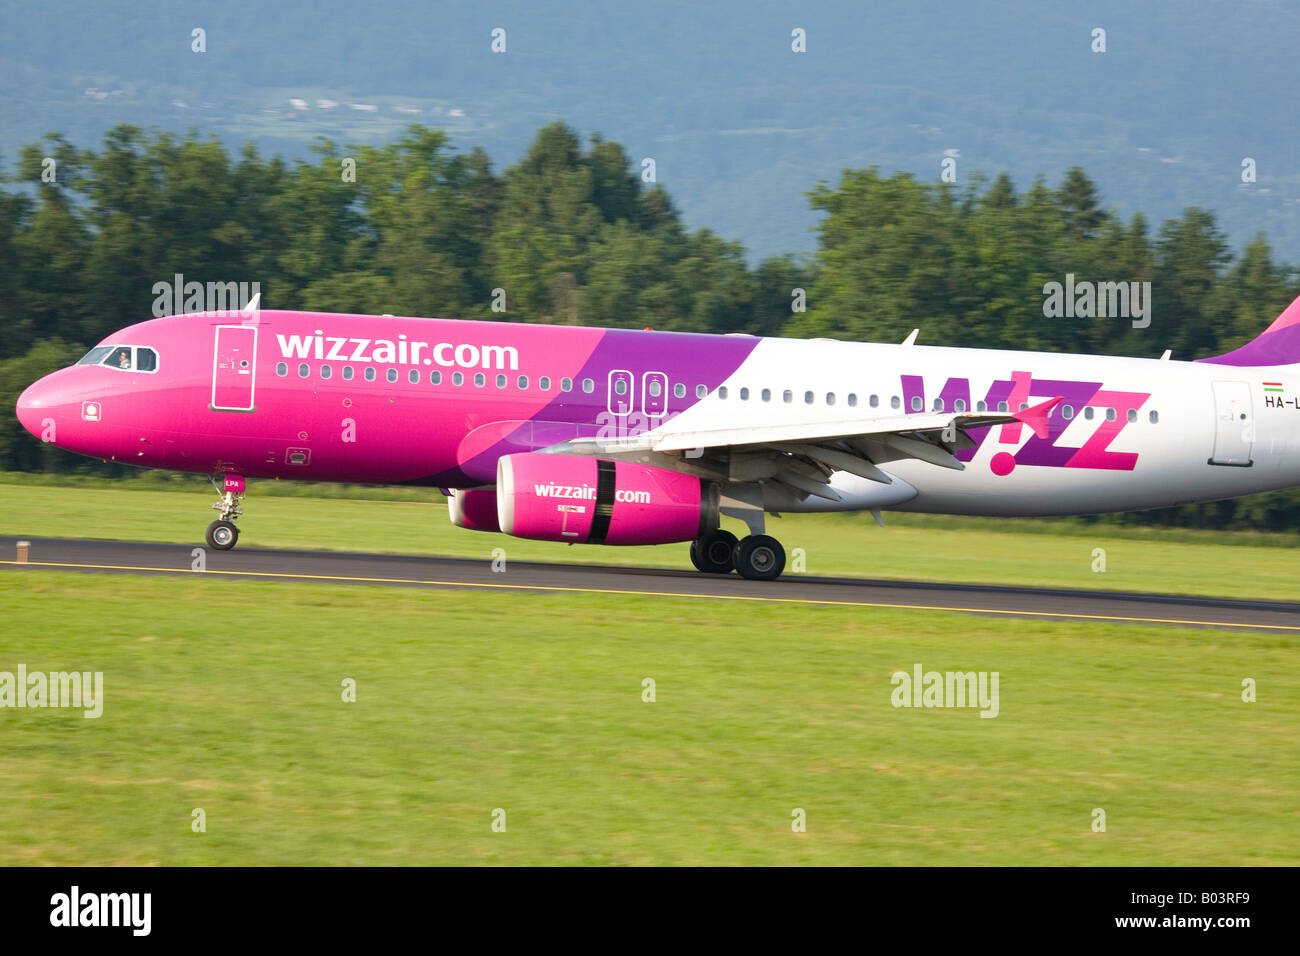 Wizzair aéronefs atterrissant sur l'Aéroport Brnik de Ljubljana Joze Pucnik Slovénie Banque D'Images